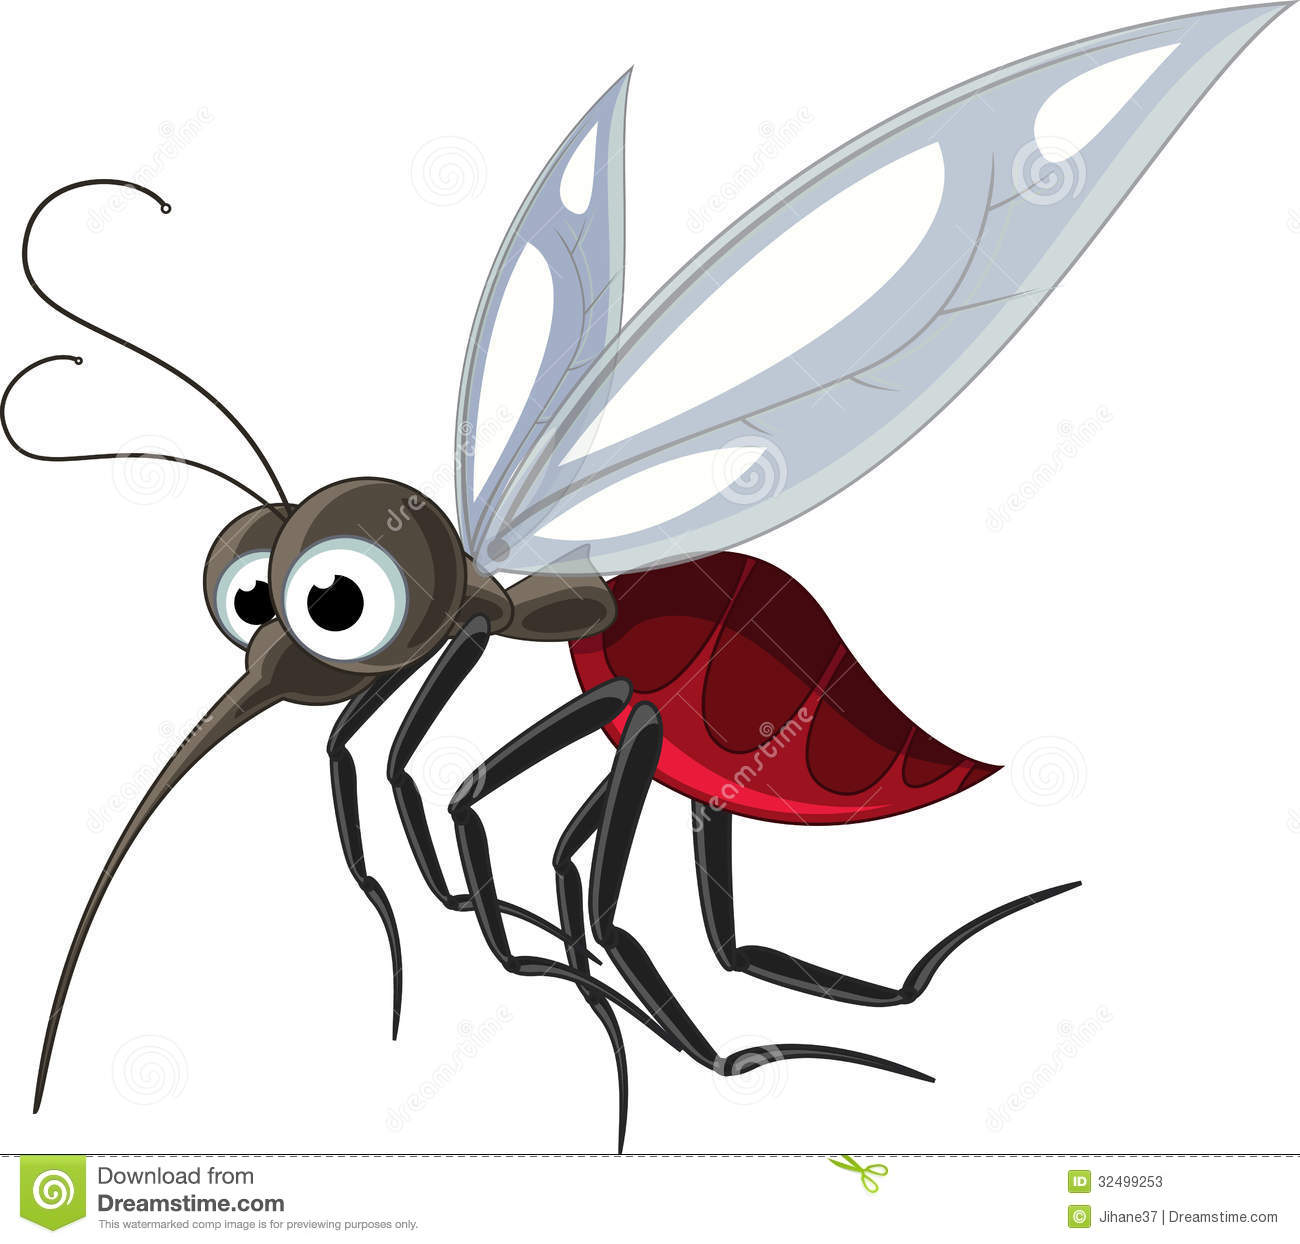 Mosquito Cartoon For You Design Stock Photos   Image  32499253